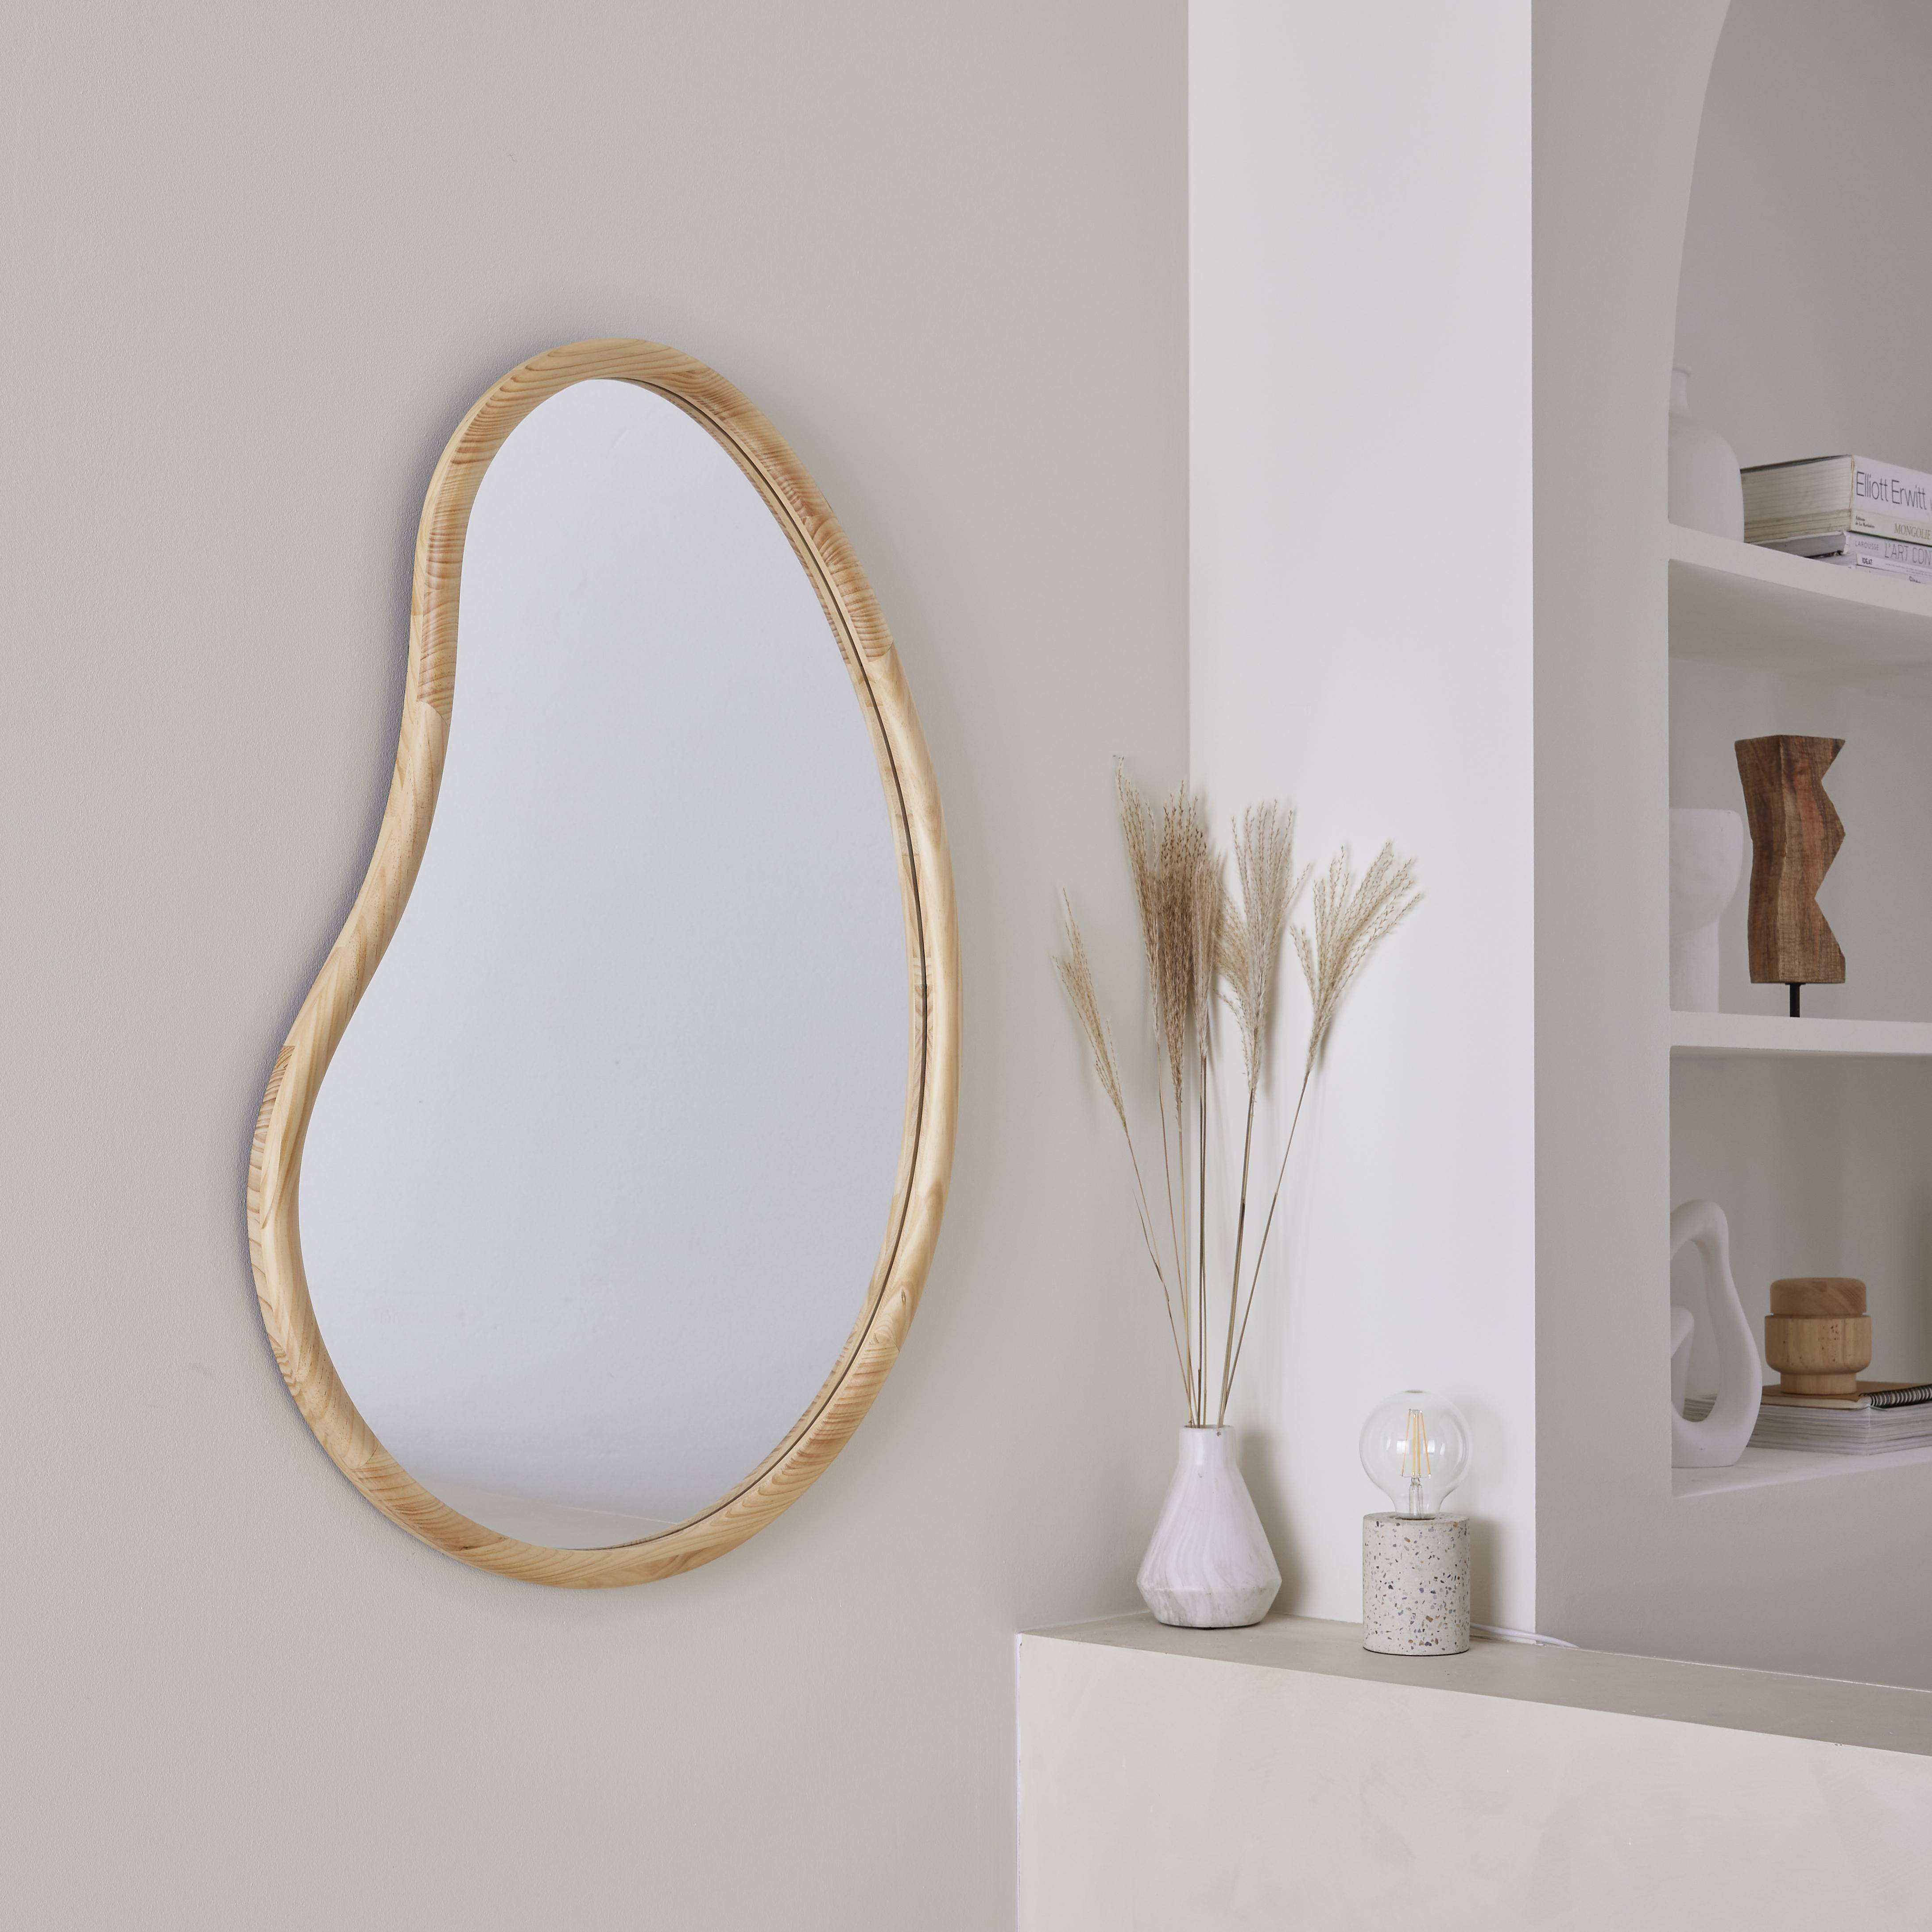 Organischer Spiegel aus Tannenholz 95cm, 3cm dick, naturfarben, für Eingang, Schlafzimmer oder Badezimmer - Jacob Photo1